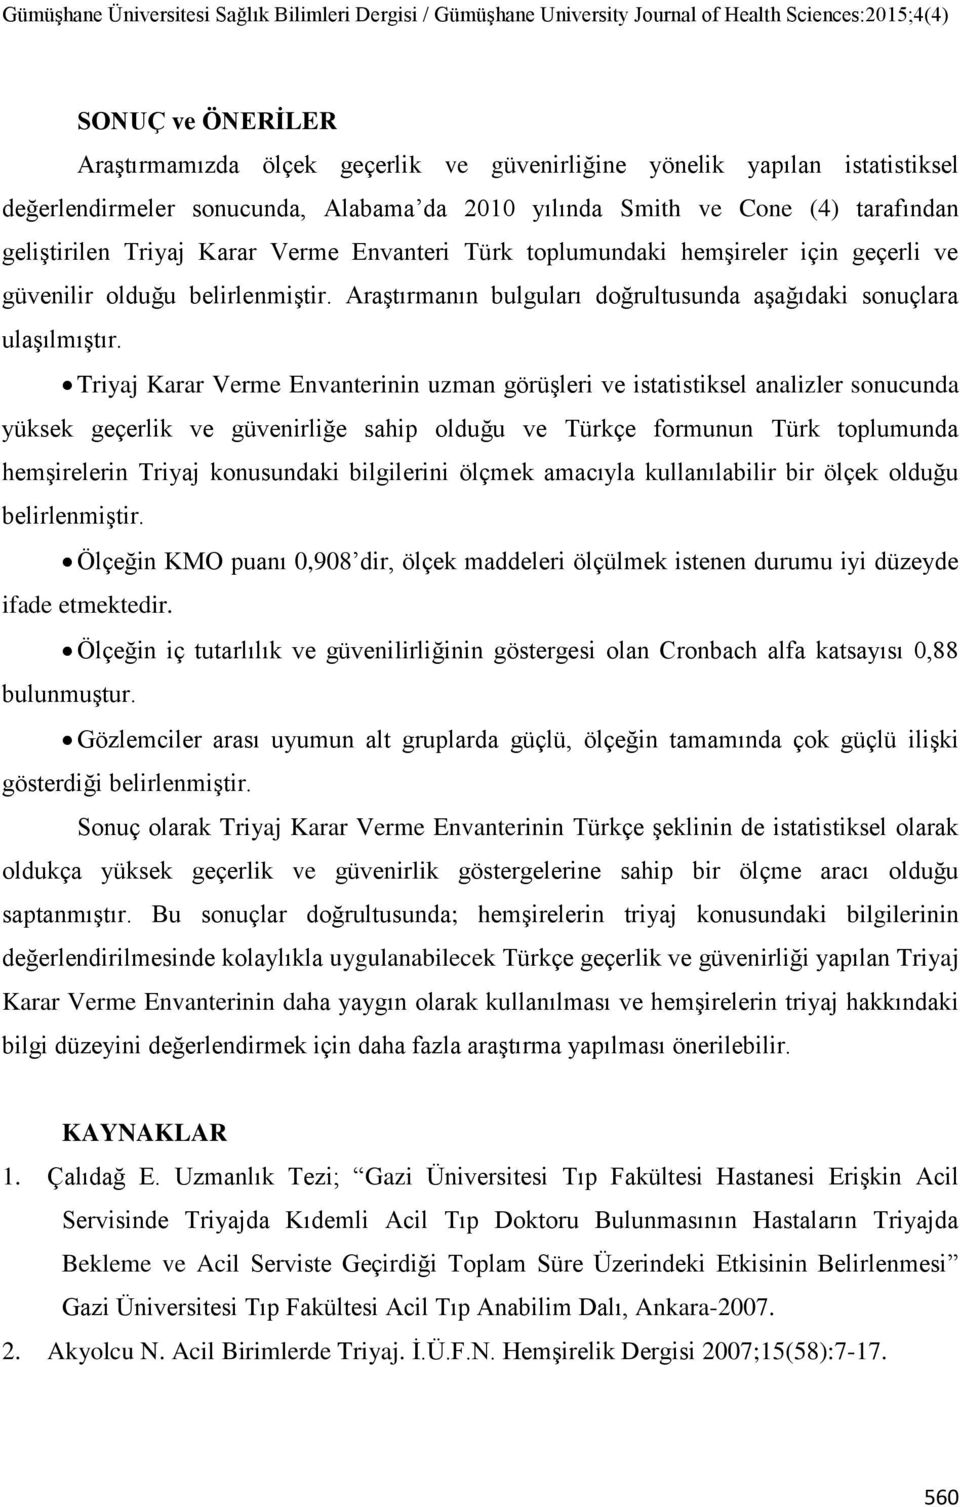 Triyaj Karar Verme Envanterinin uzman görüşleri ve istatistiksel analizler sonucunda yüksek geçerlik ve güvenirliğe sahip olduğu ve Türkçe formunun Türk toplumunda hemşirelerin Triyaj konusundaki